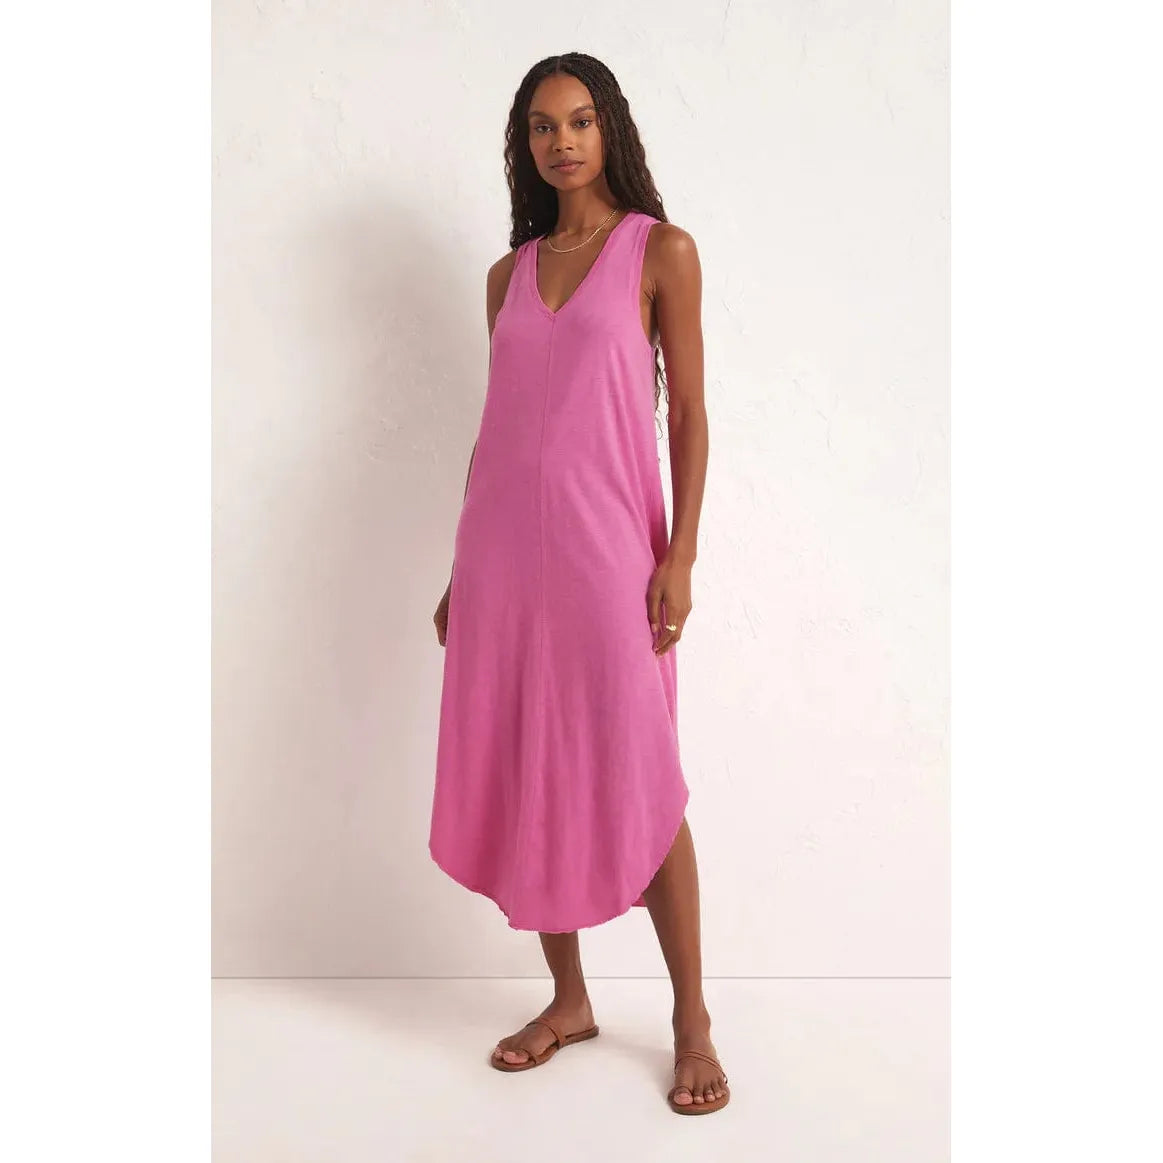 Z SUPPLY HeartBreaker Pink / XS Z Supply Reverie Dress Evergreen